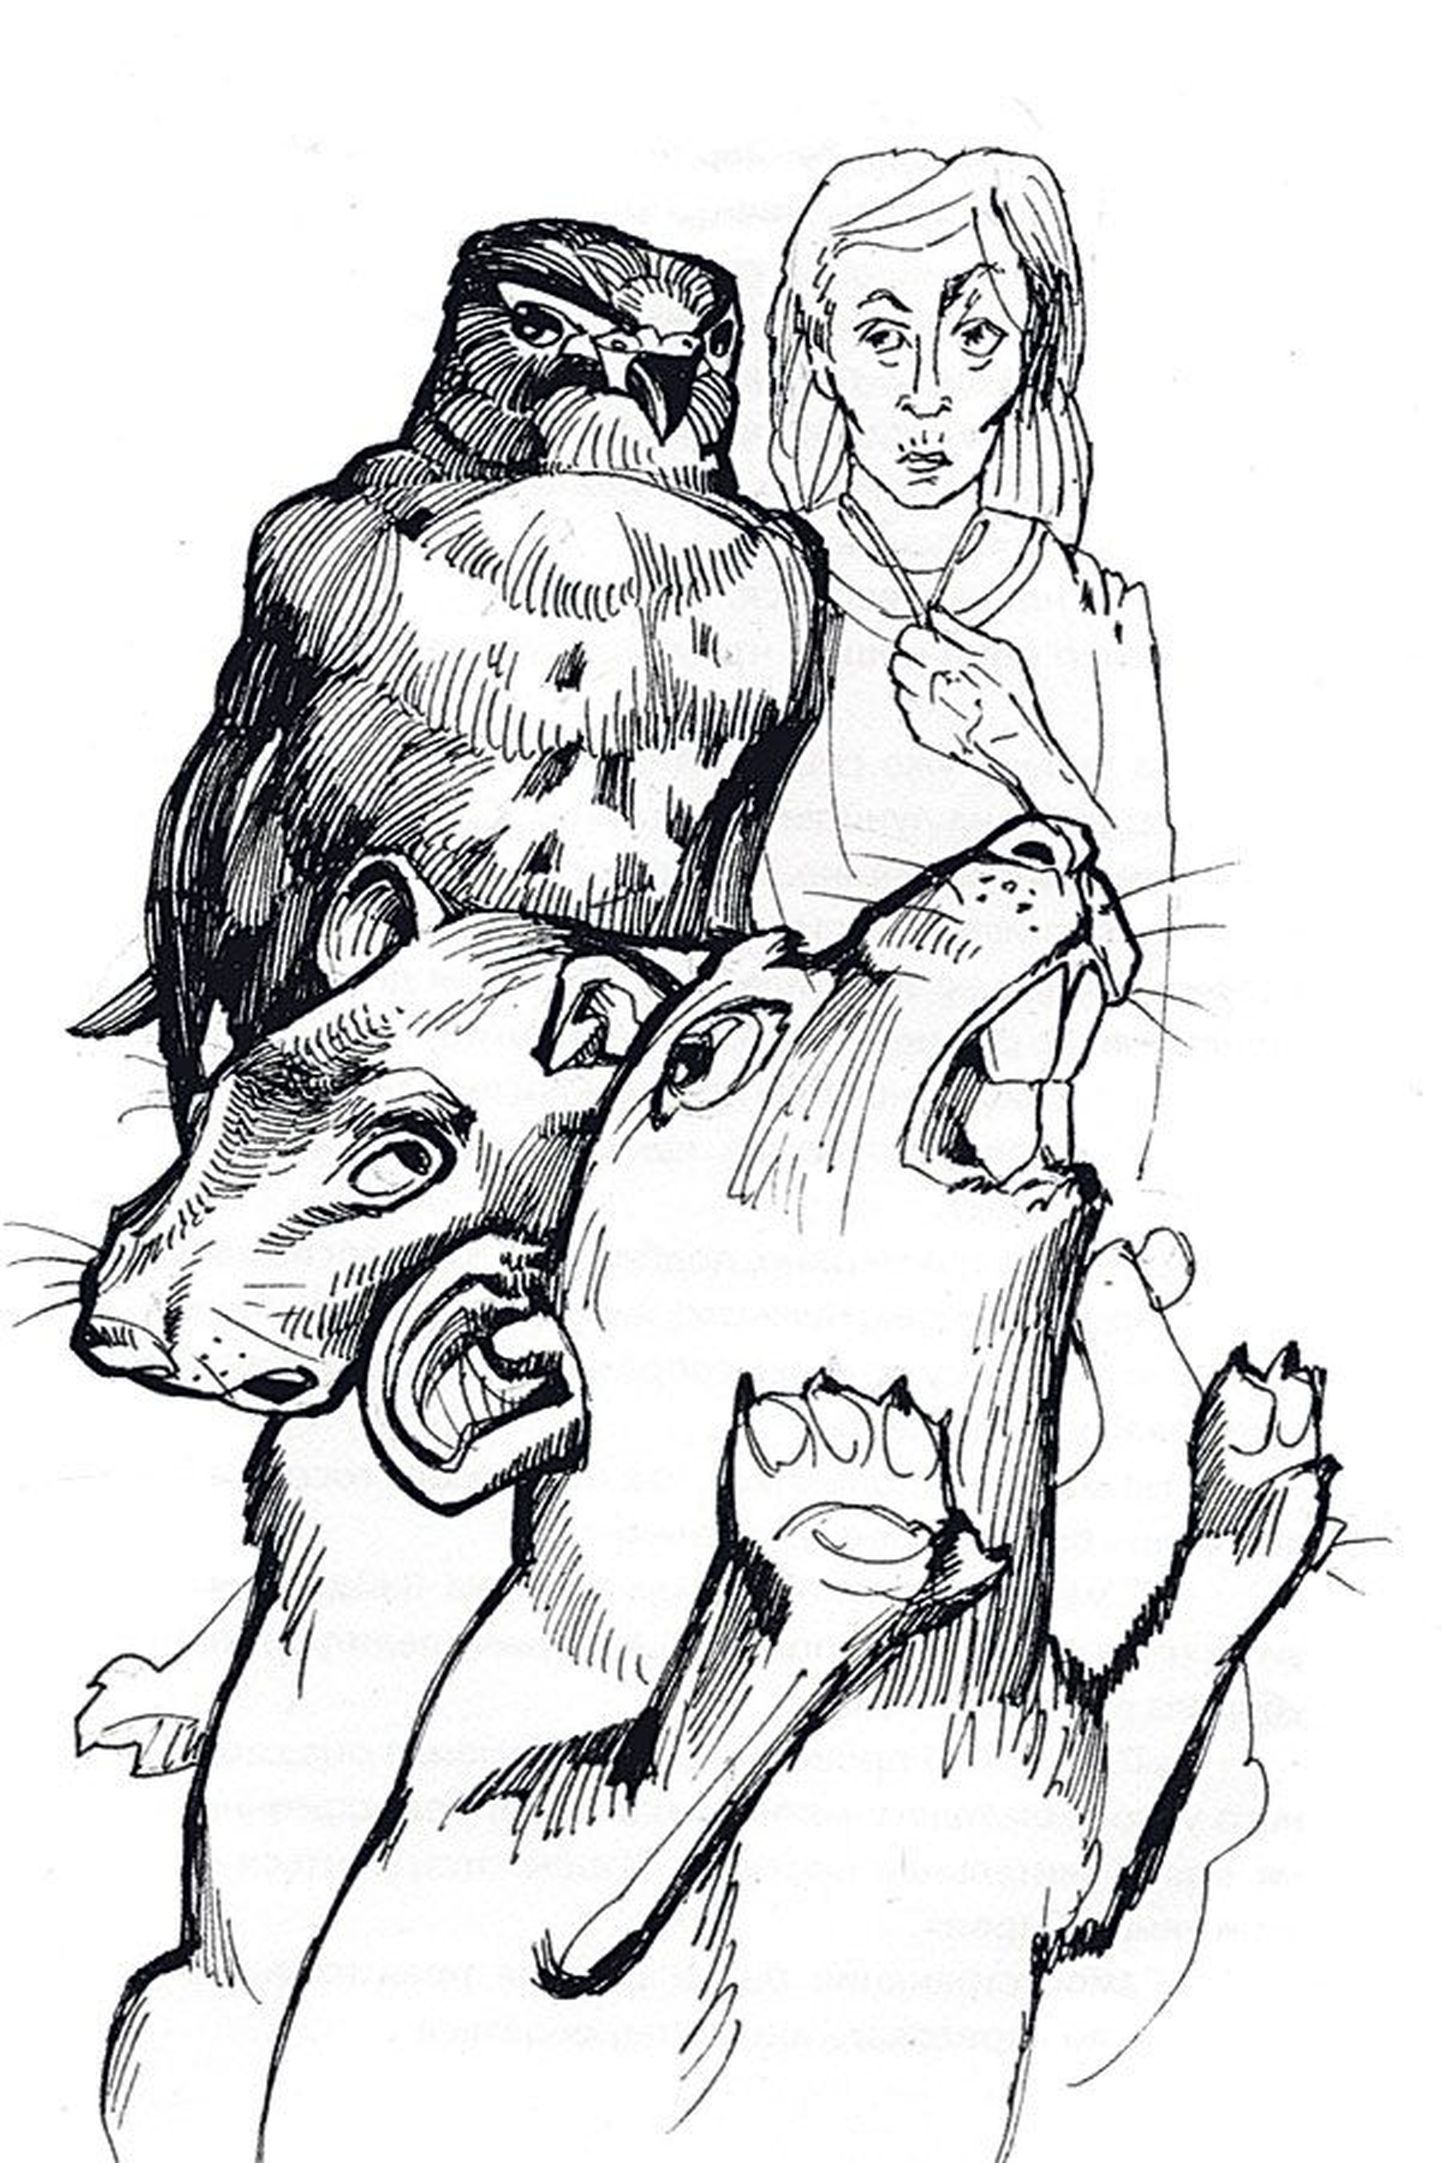 Картинка из «Рассказов о животных» Яана Раннапа: госпожа 
Вайдер, предназначенные к съедению мыши и невозмутимый сарыч-мышелов Виугу.